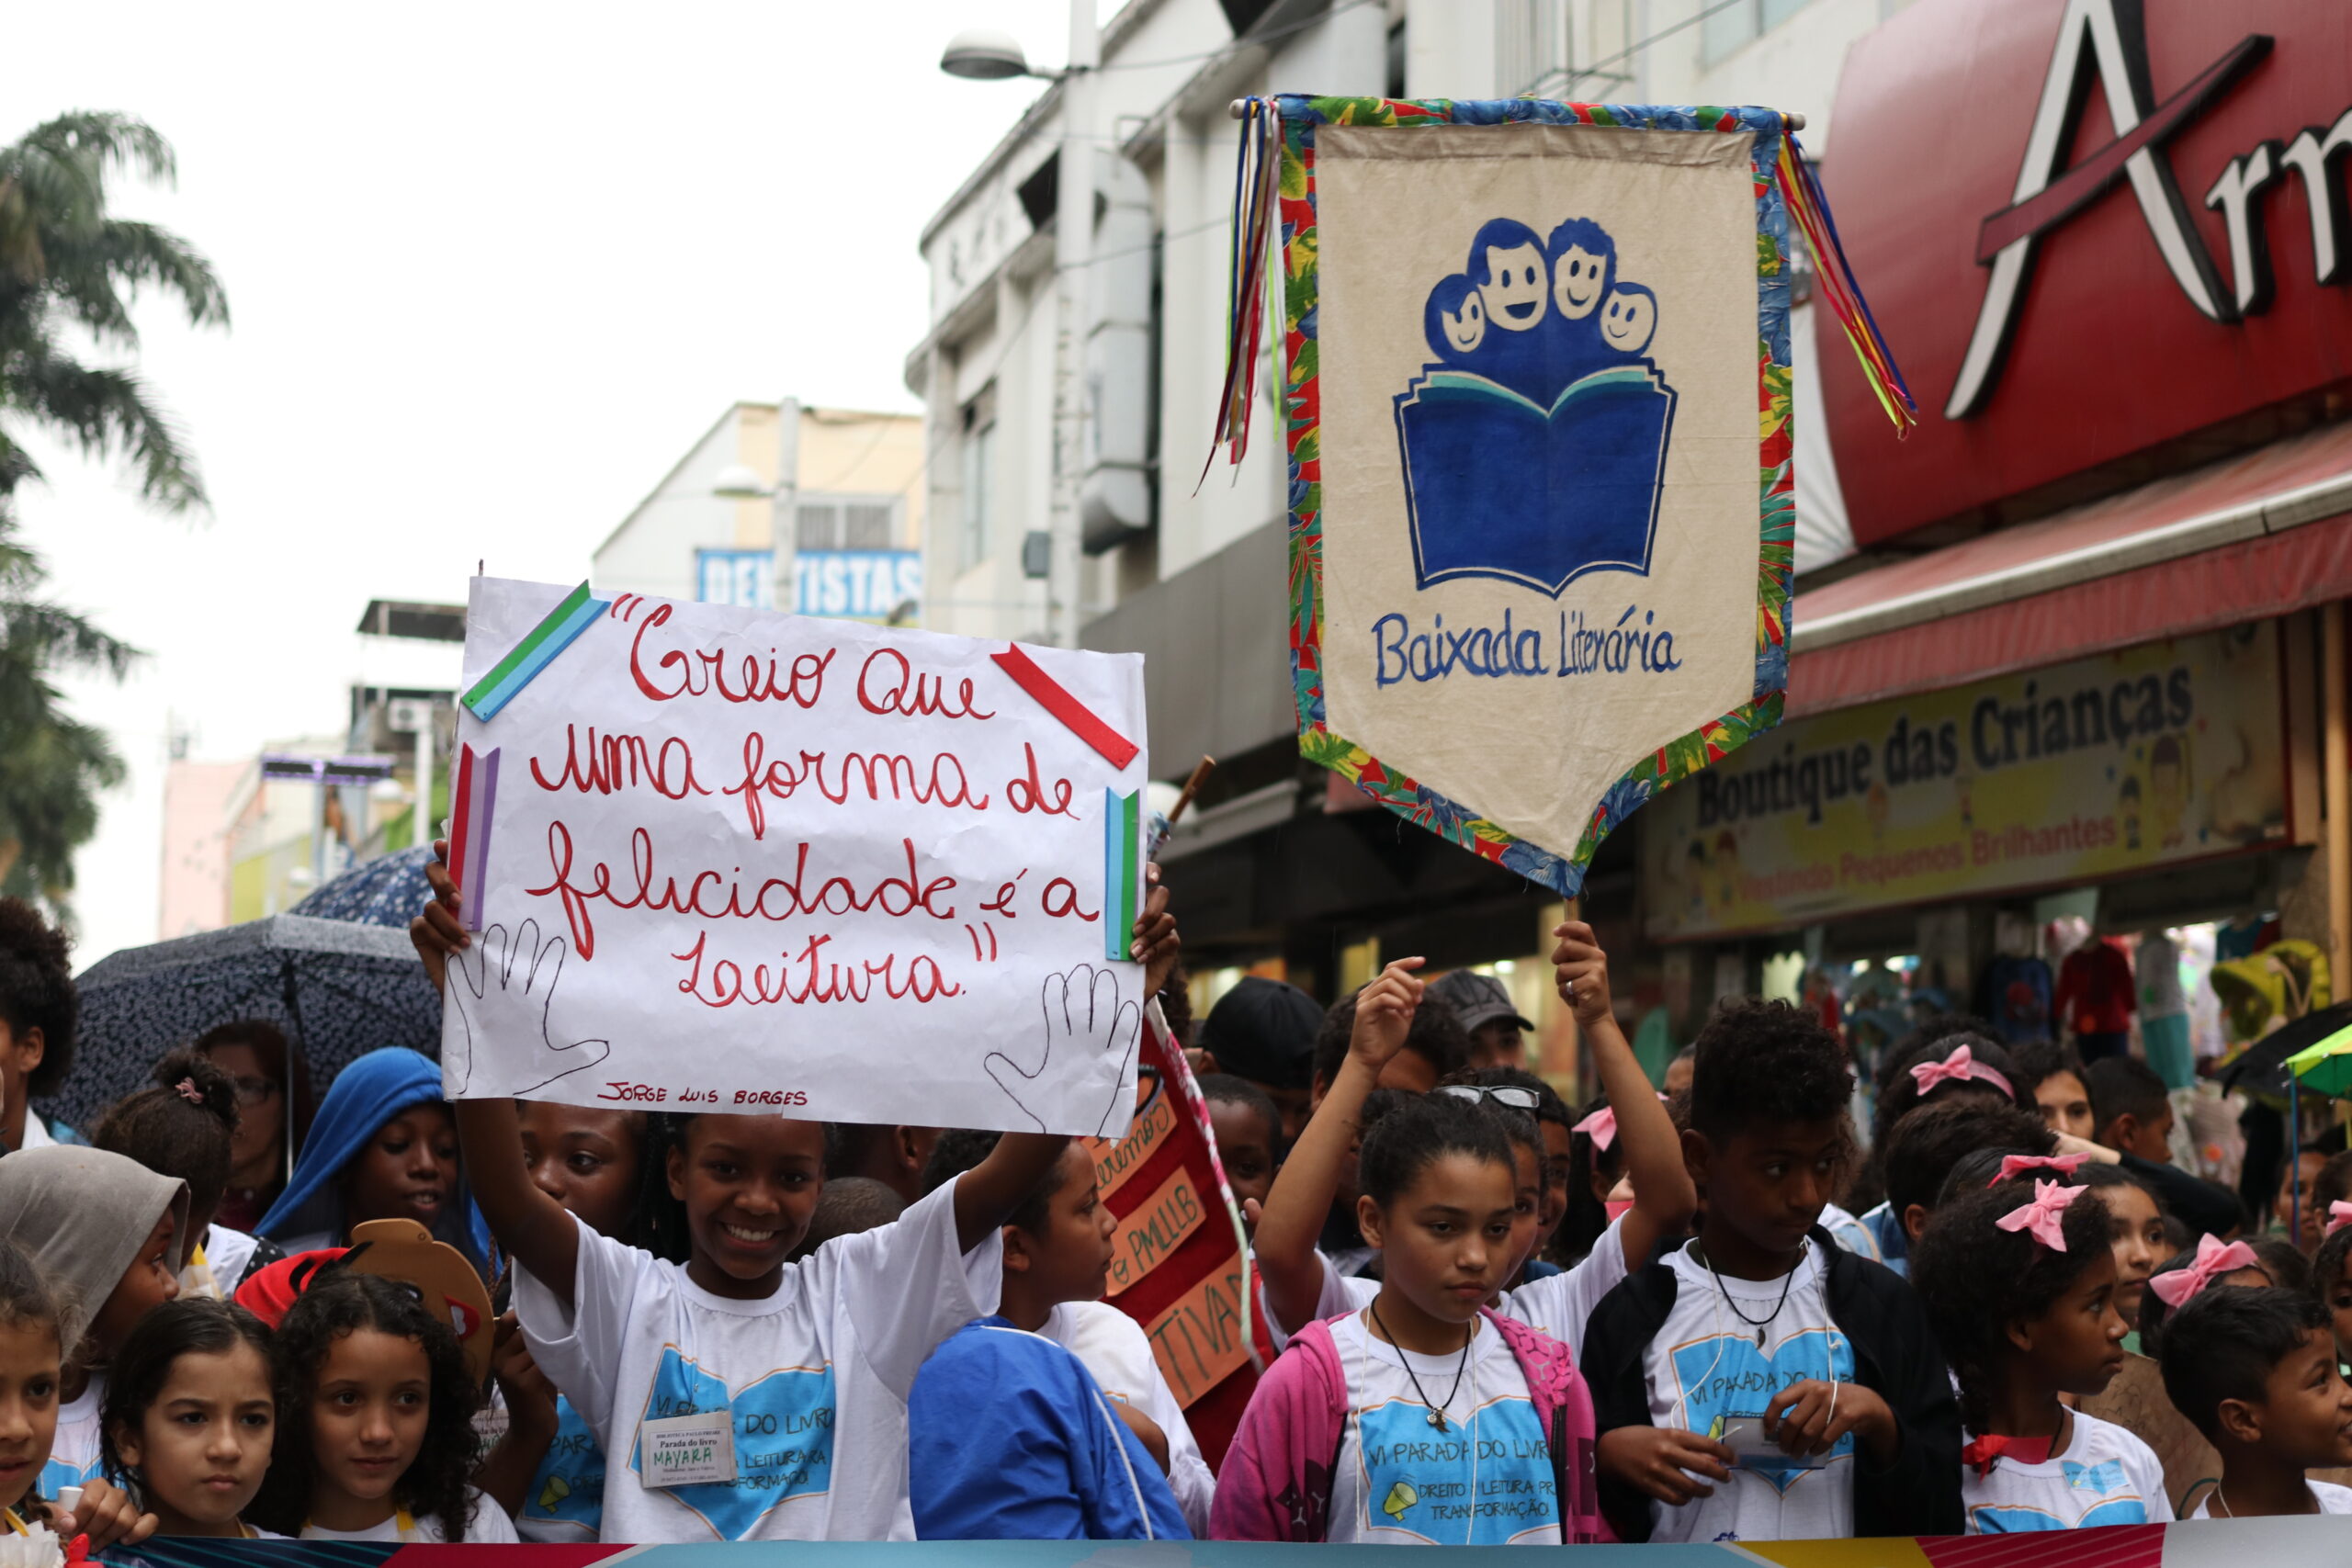 Parada do Livro passando pelo calçadão de Nova Iguaçu. Foto: Nathália Cabral